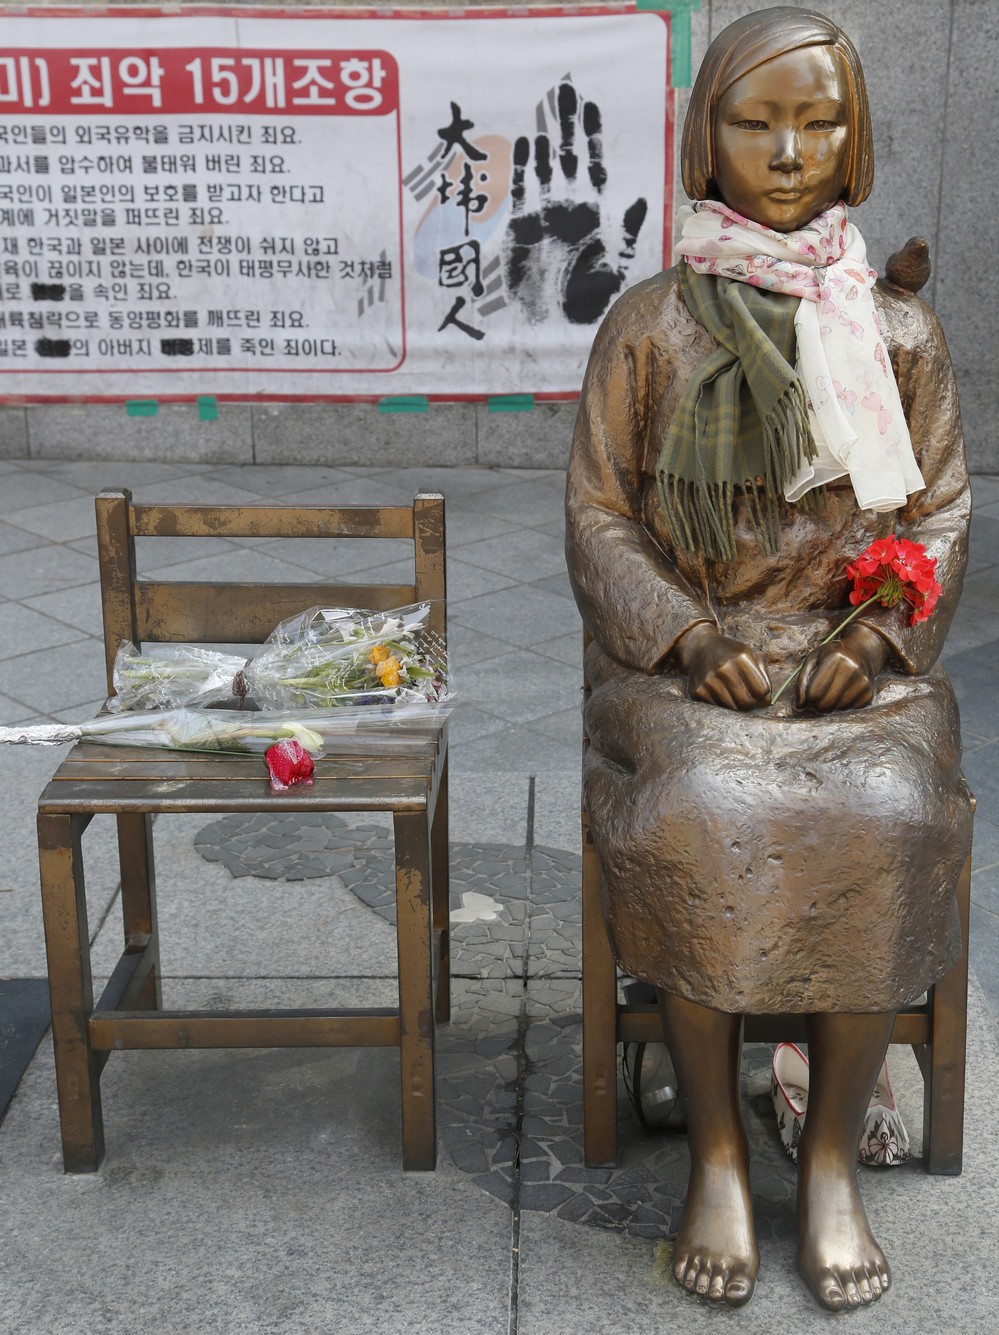 日韓関係、次の焦点は「慰安婦像の撤去」 韓国側は「民間がやった」と応じず